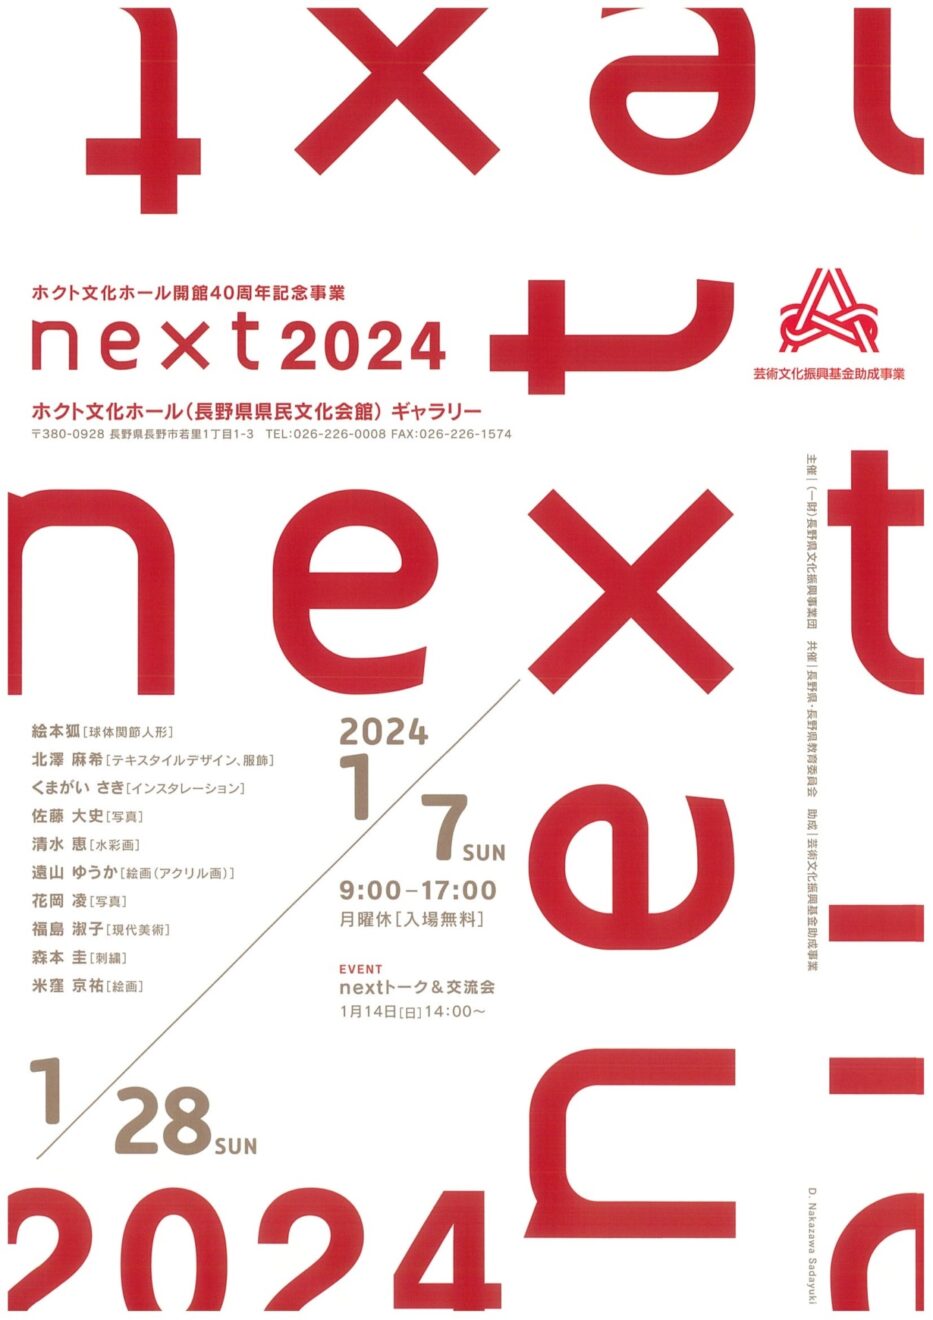 展示会のお知らせ | 『next 2024』
ホクト文化ホール ギャラリー